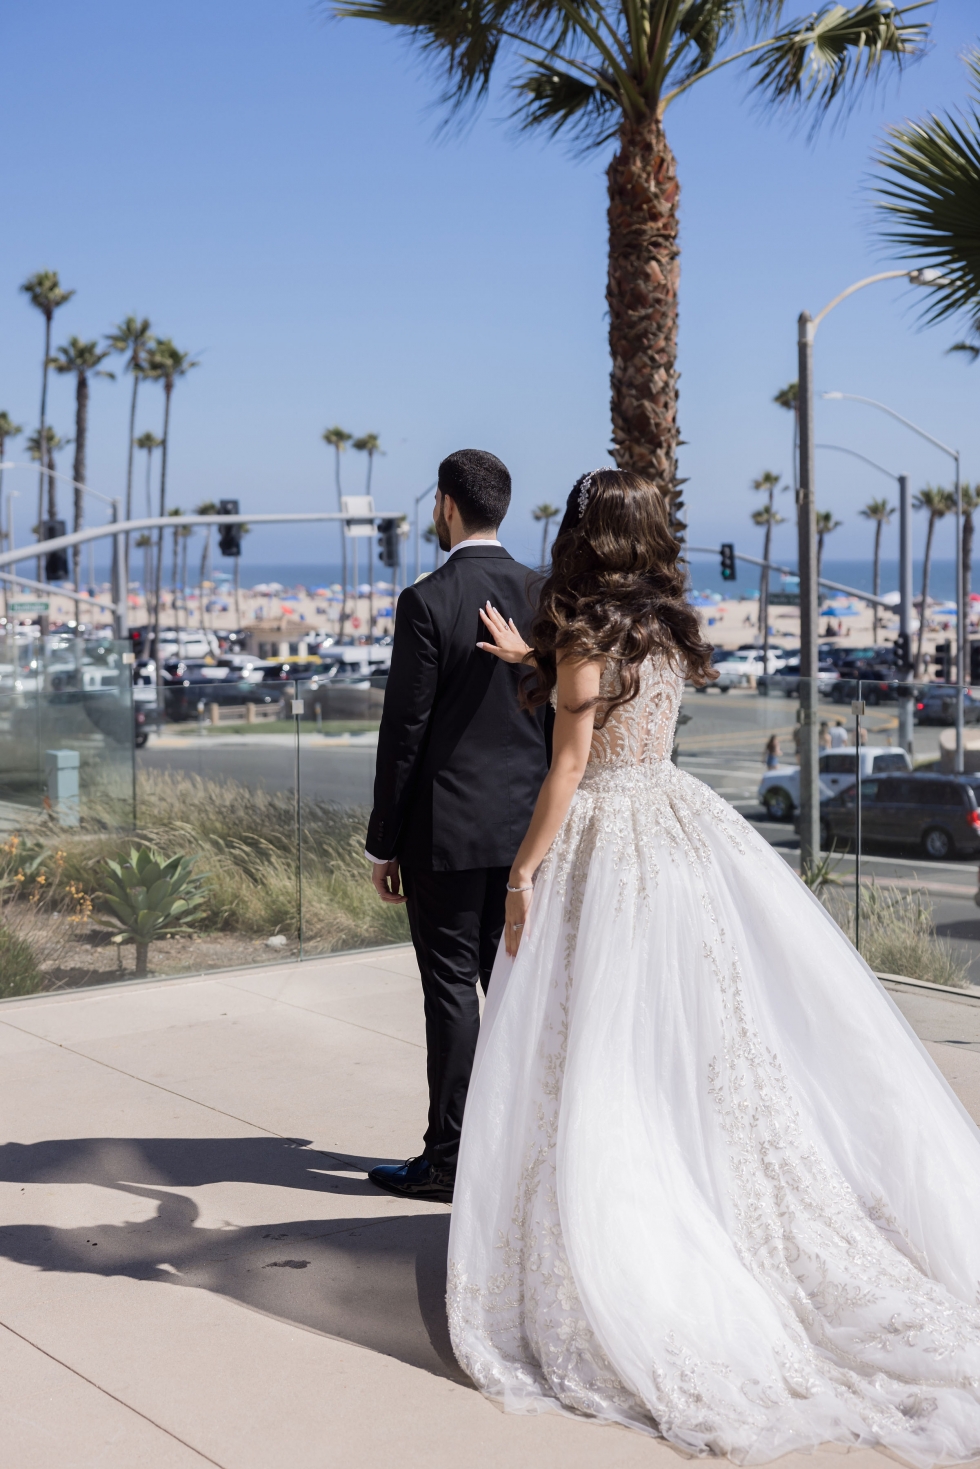 حفل زفاف عربي أنيق في شاطئ هنتنغتون في كاليفورنيا